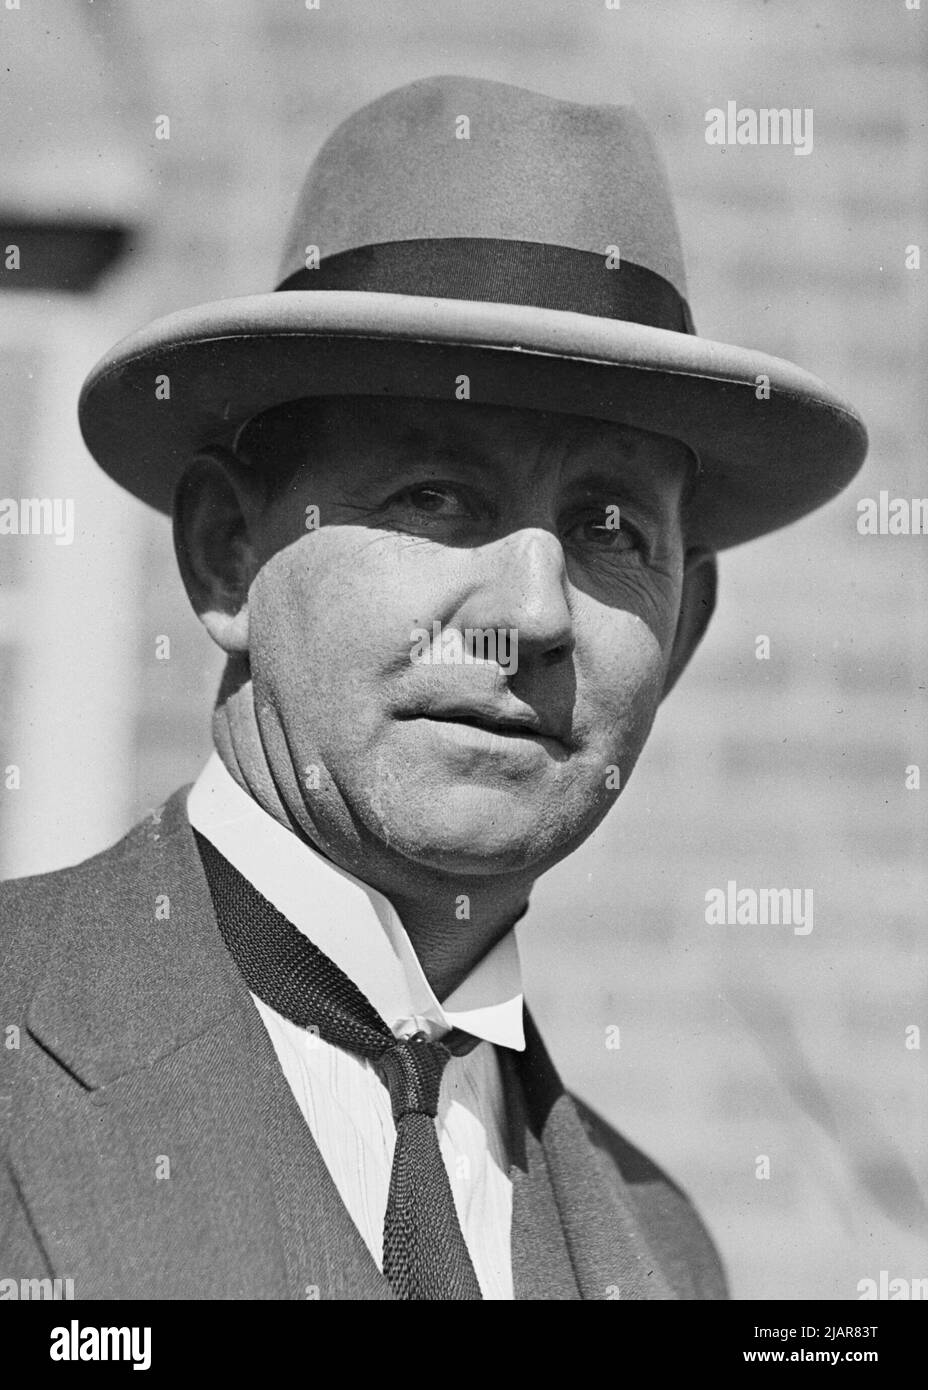 Harold Thorby, homme politique du Parti national australien, en tant que ministre de l'Agriculture de la Nouvelle-Galles du Sud, assistant à la conférence Dairy Farmer's Conference dans la salle de conférence Showgrounds, Sydney ca. 1930 Banque D'Images